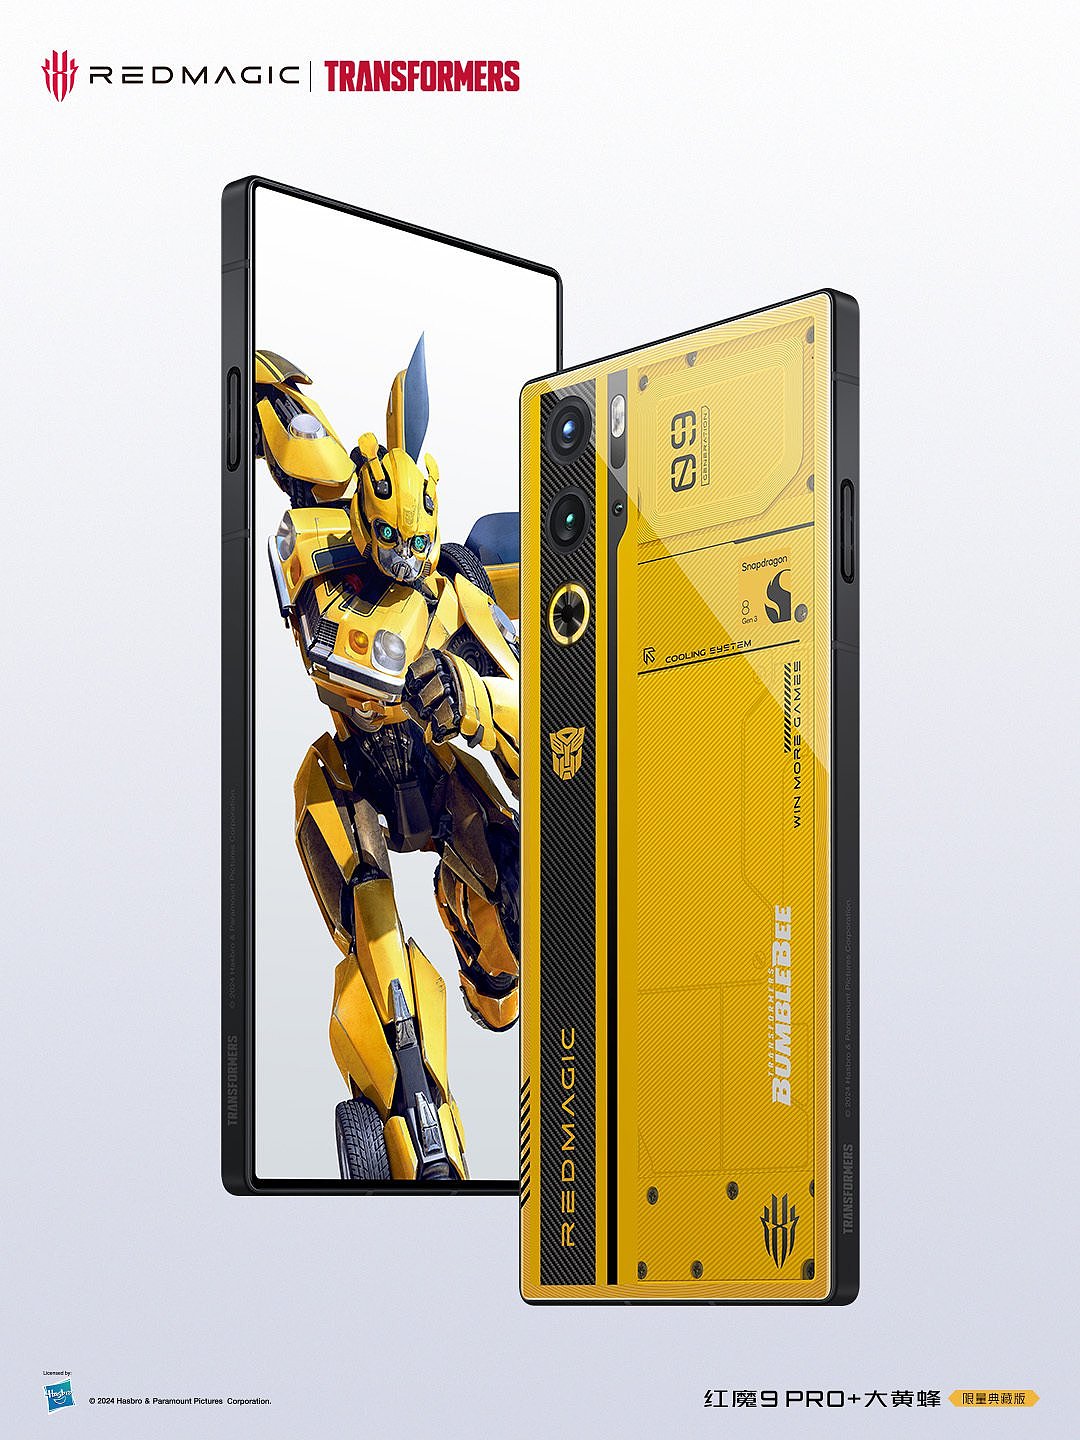 红魔 9 Pro + 变形金刚大黄蜂限量版手机外观公布：黑黄撞色 + 氘锋透明设计 - 1